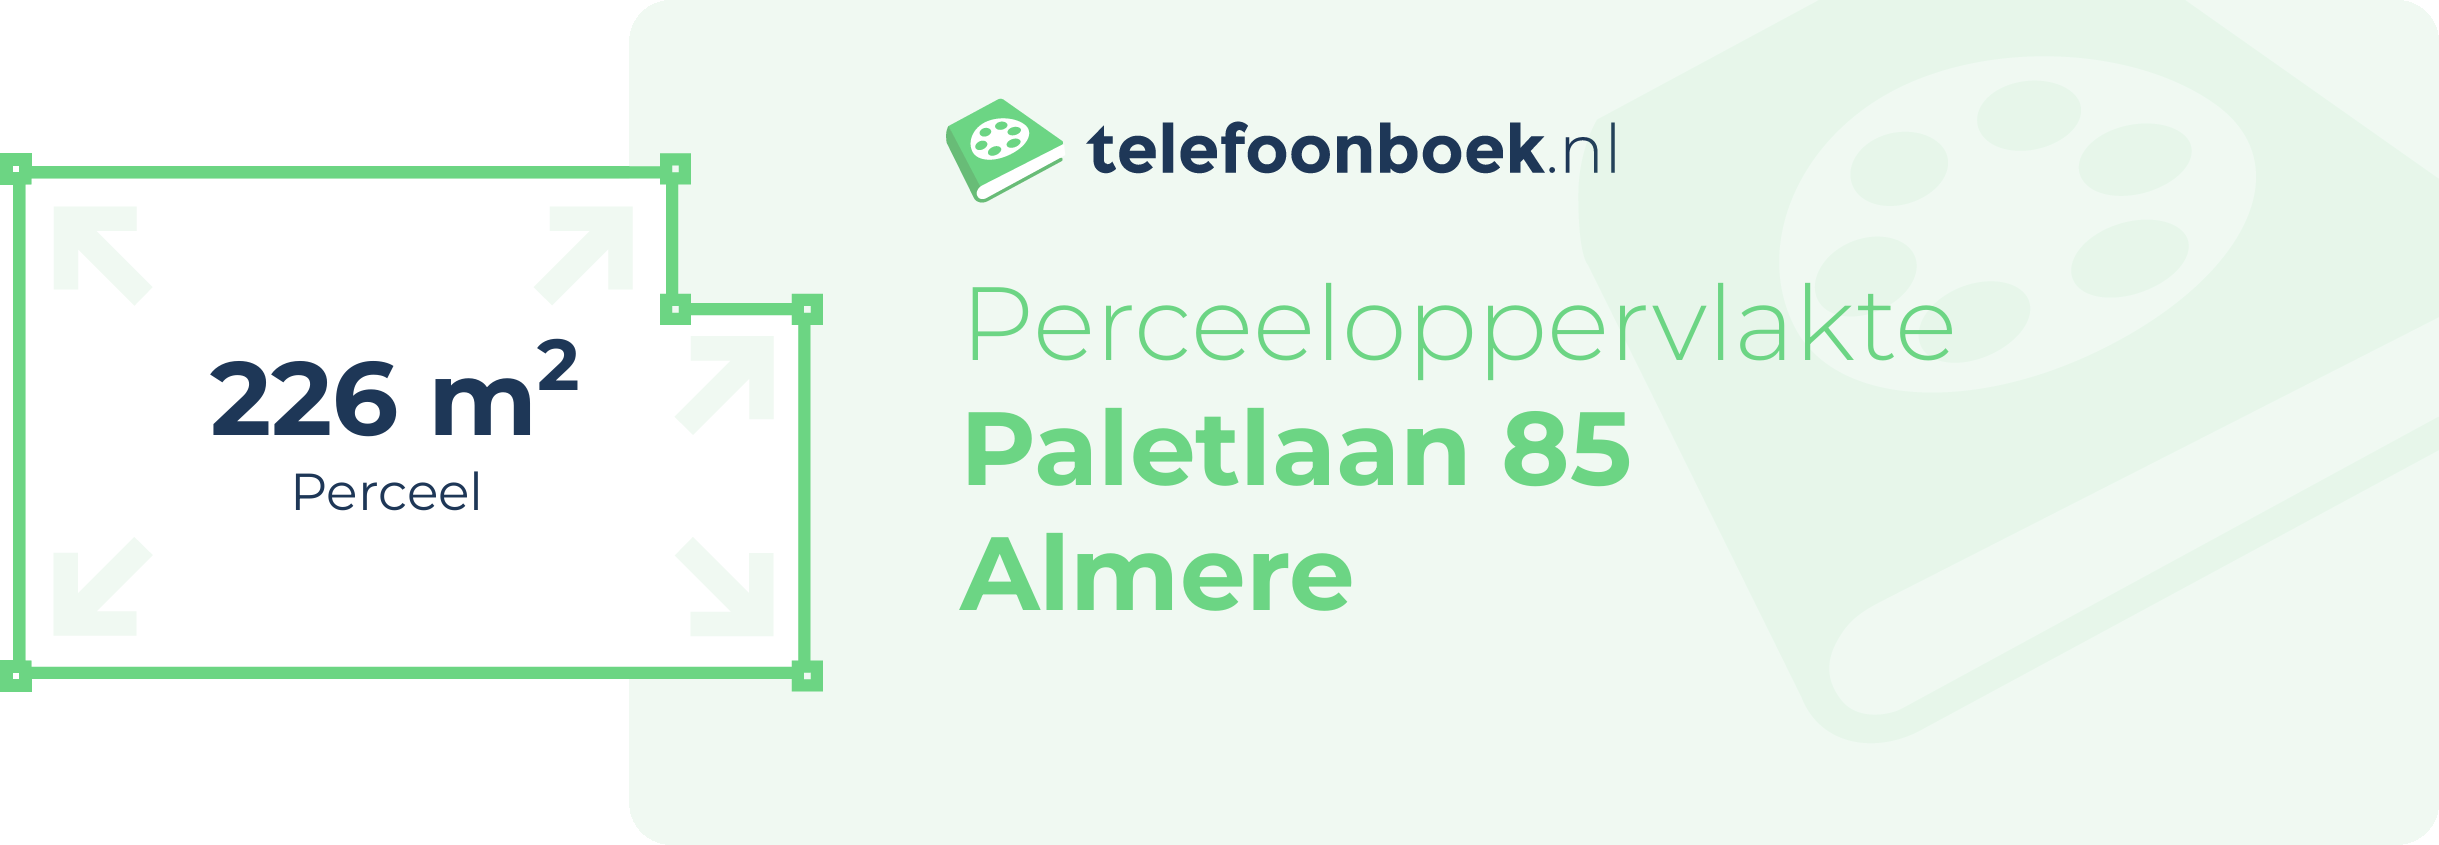 Perceeloppervlakte Paletlaan 85 Almere